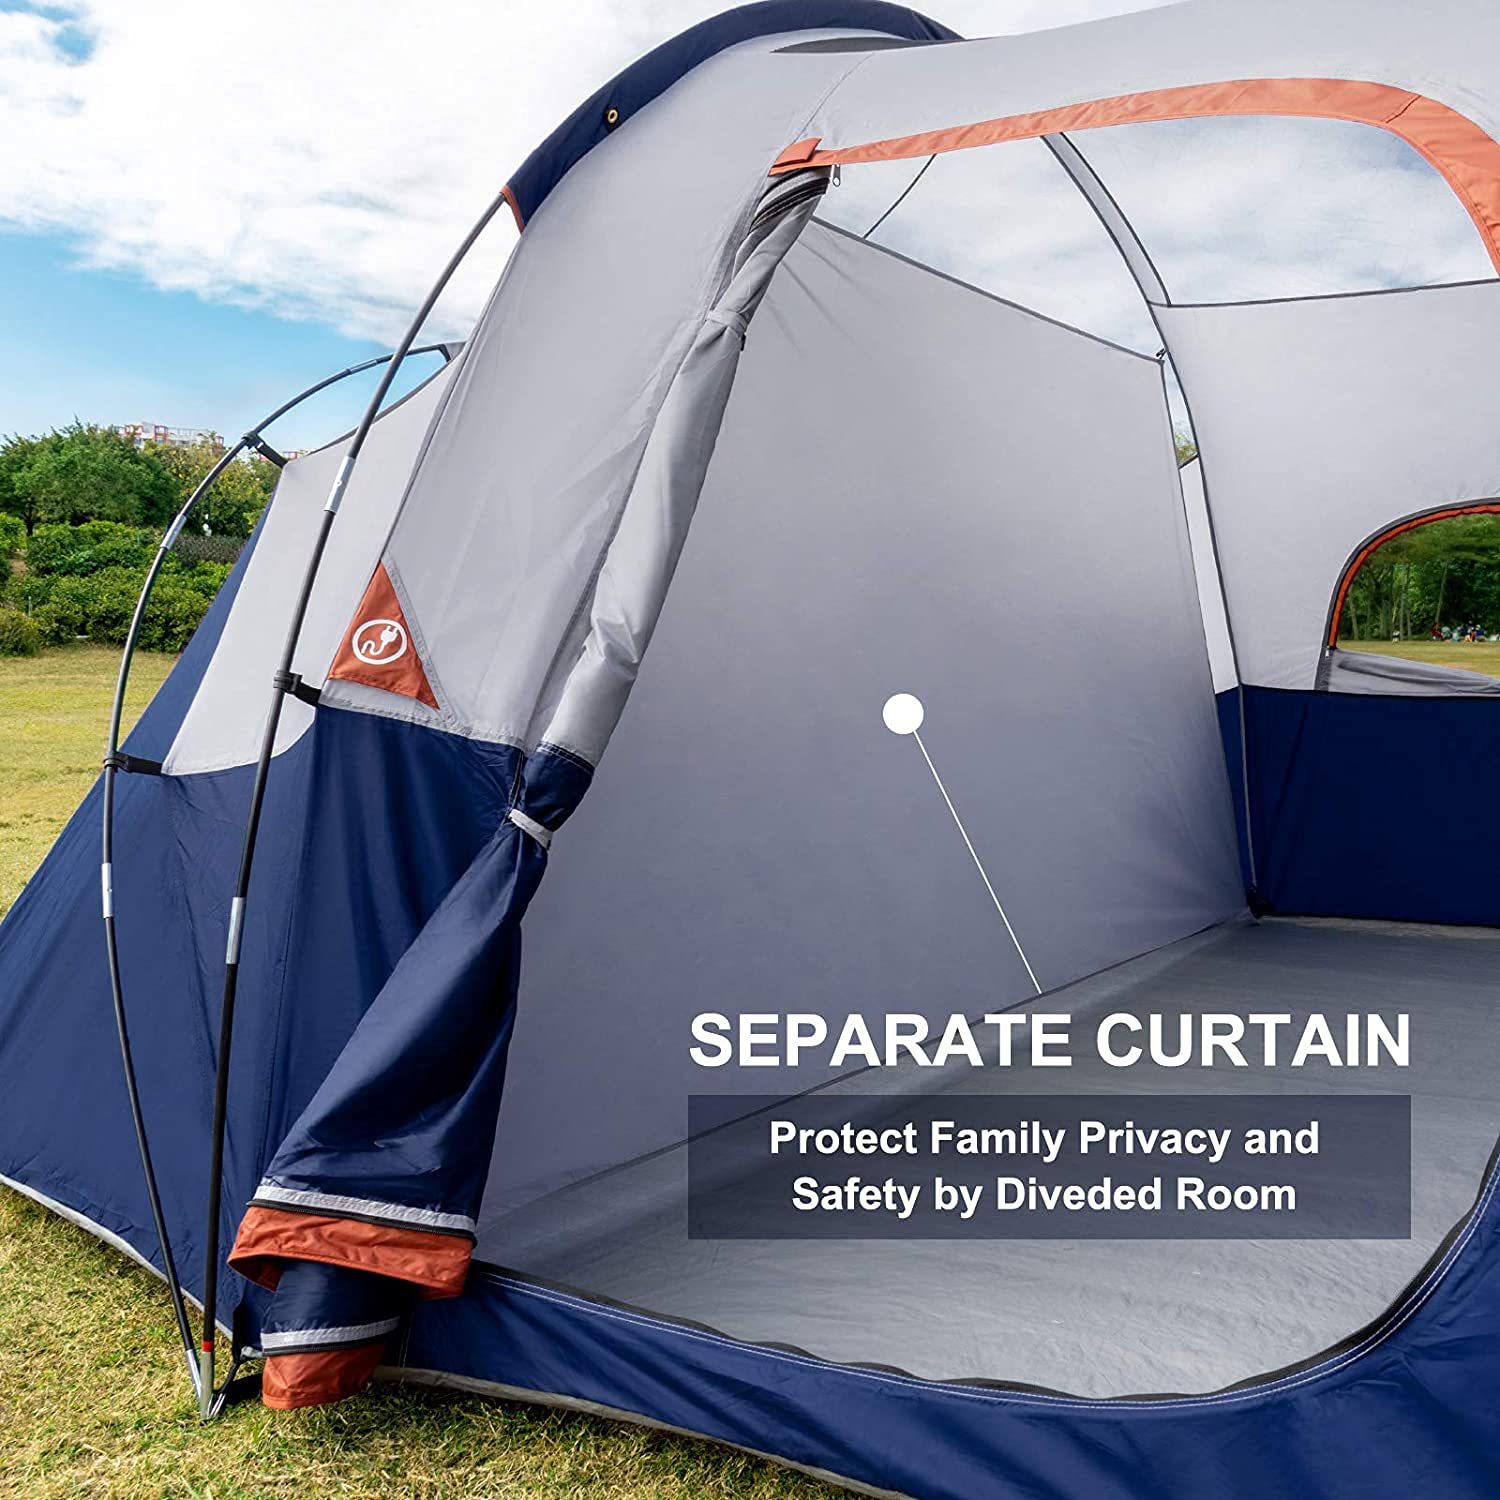 Šator - 8 osoba - šatori za kampovanje, vodootporan porodični šator otporan na vjetar, 5 velikih mrežastih prozora, dvoslojni, podijeljena zavjesa za odvojenu sobu, prenosiva sa torbom za nošenje